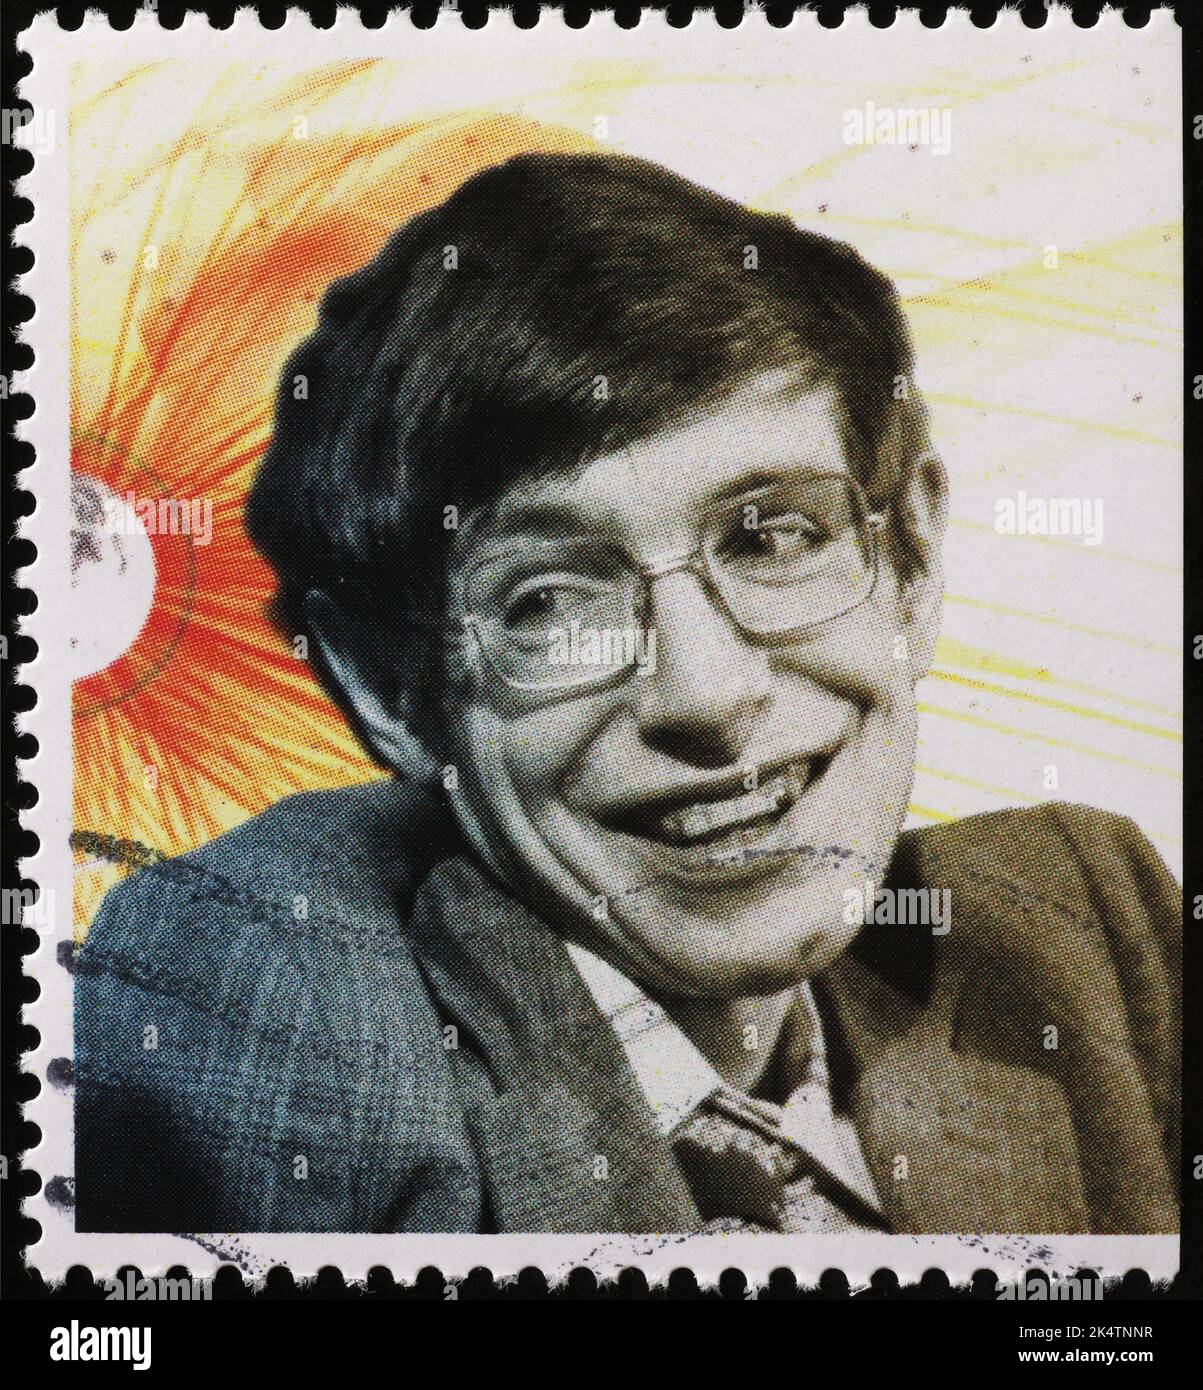 Primo piano del giovane Stephen Hawking sul francobollo Foto Stock